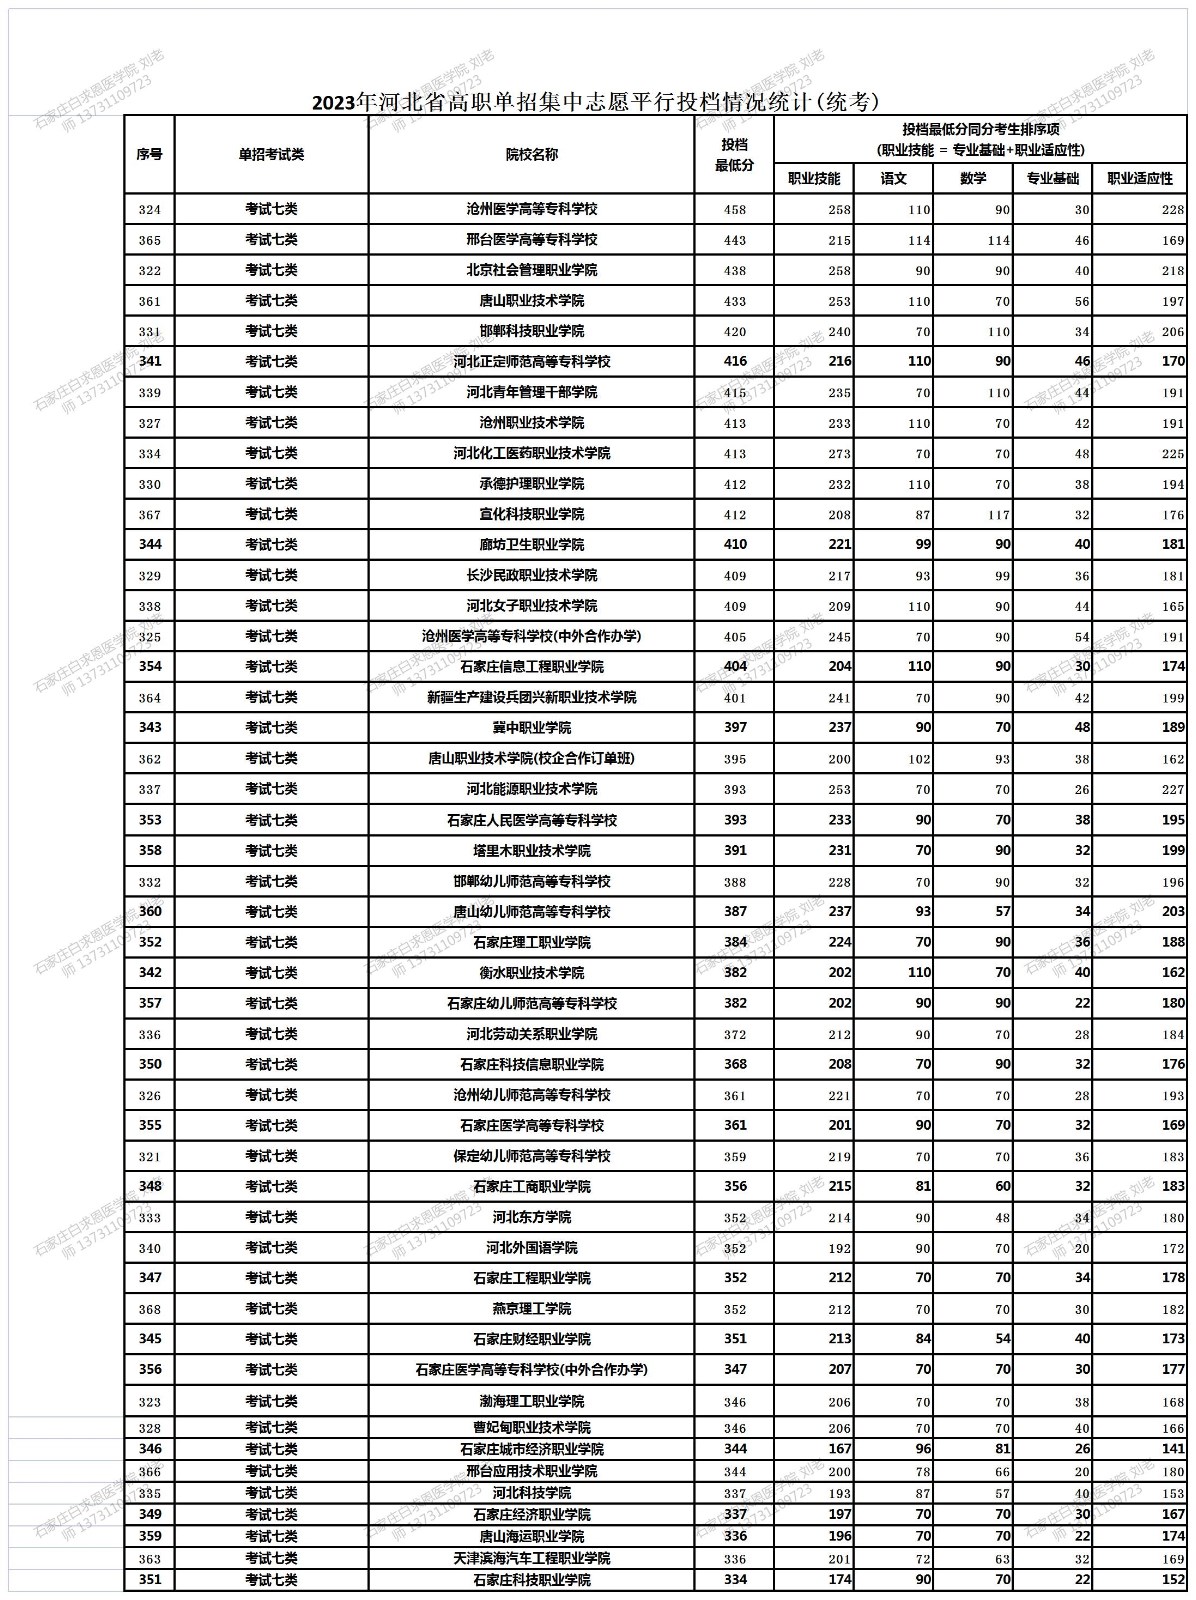 2023年河北省高職單招集中志愿平行投檔情況統計（統考）_18-18_Table1.jpg